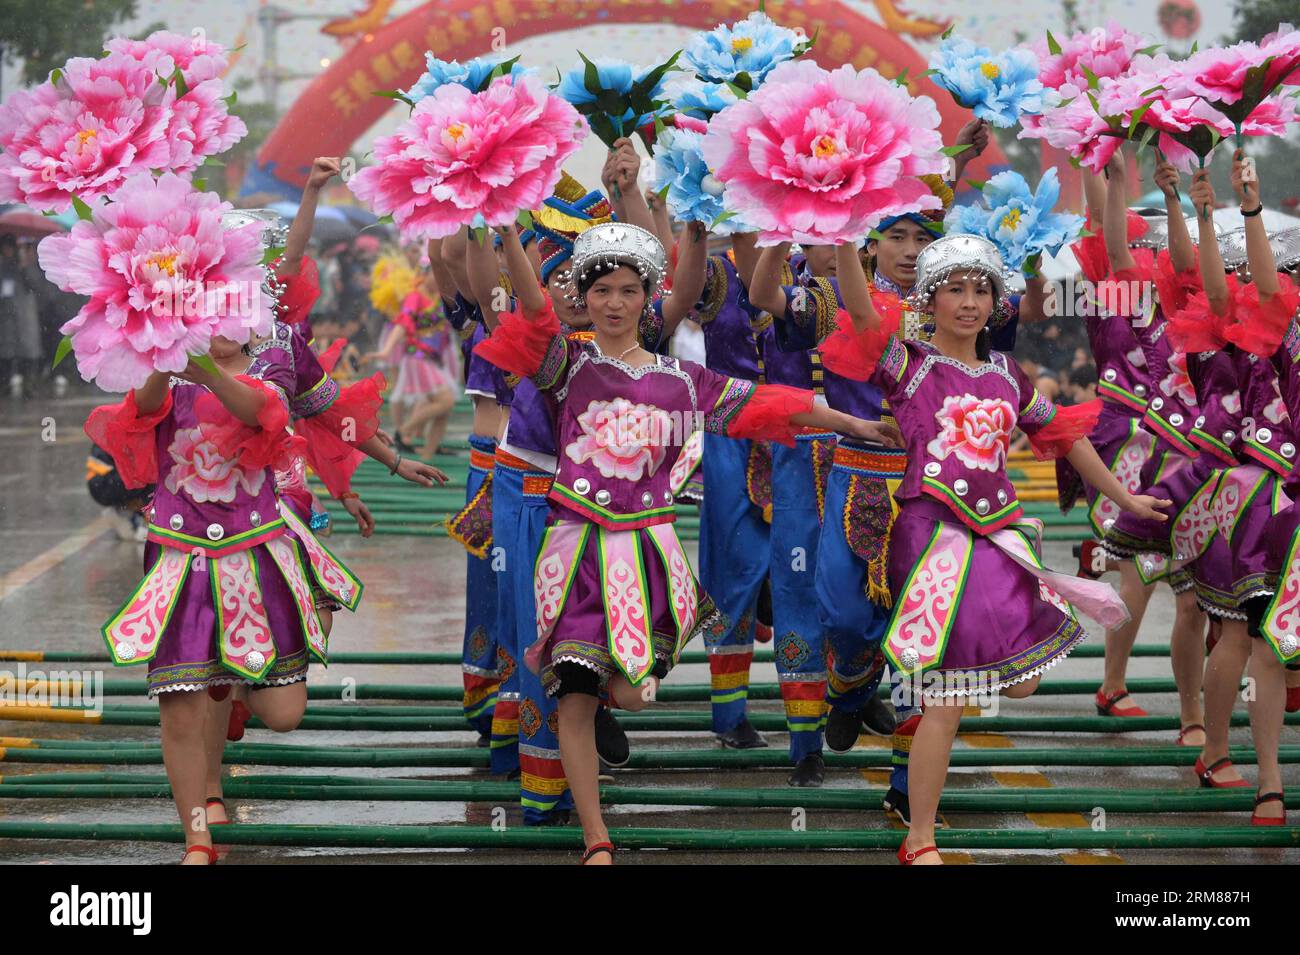 (140402) -- WUMING, 2. April 2014 (Xinhua) -- Menschen der ethnischen Gruppe Zhuang treten beim San Yue San Festival im Wuming County, südchinesische autonome Region Guangxi Zhuang, 2. April 2014 auf. Das Festival, das am 3. Tag des 3. Monats im chinesischen Mondkalender stattfindet, wird von Menschen vieler ethnischer Gruppen in China gefeiert. (Xinhua/Zhou Hua) (zc) CHINA-GUANGXI-WUMING-SAN YUE SAN (CN) PUBLICATIONxNOTxINxCHN Wuming 2. April 2014 XINHUA-Prominente der Zhuang-Gruppe treten AUF dem San Yue San Festival im Wuming County Südchina S Guangxi Zhuang Autonomous Region 2. April 201 auf Stockfoto